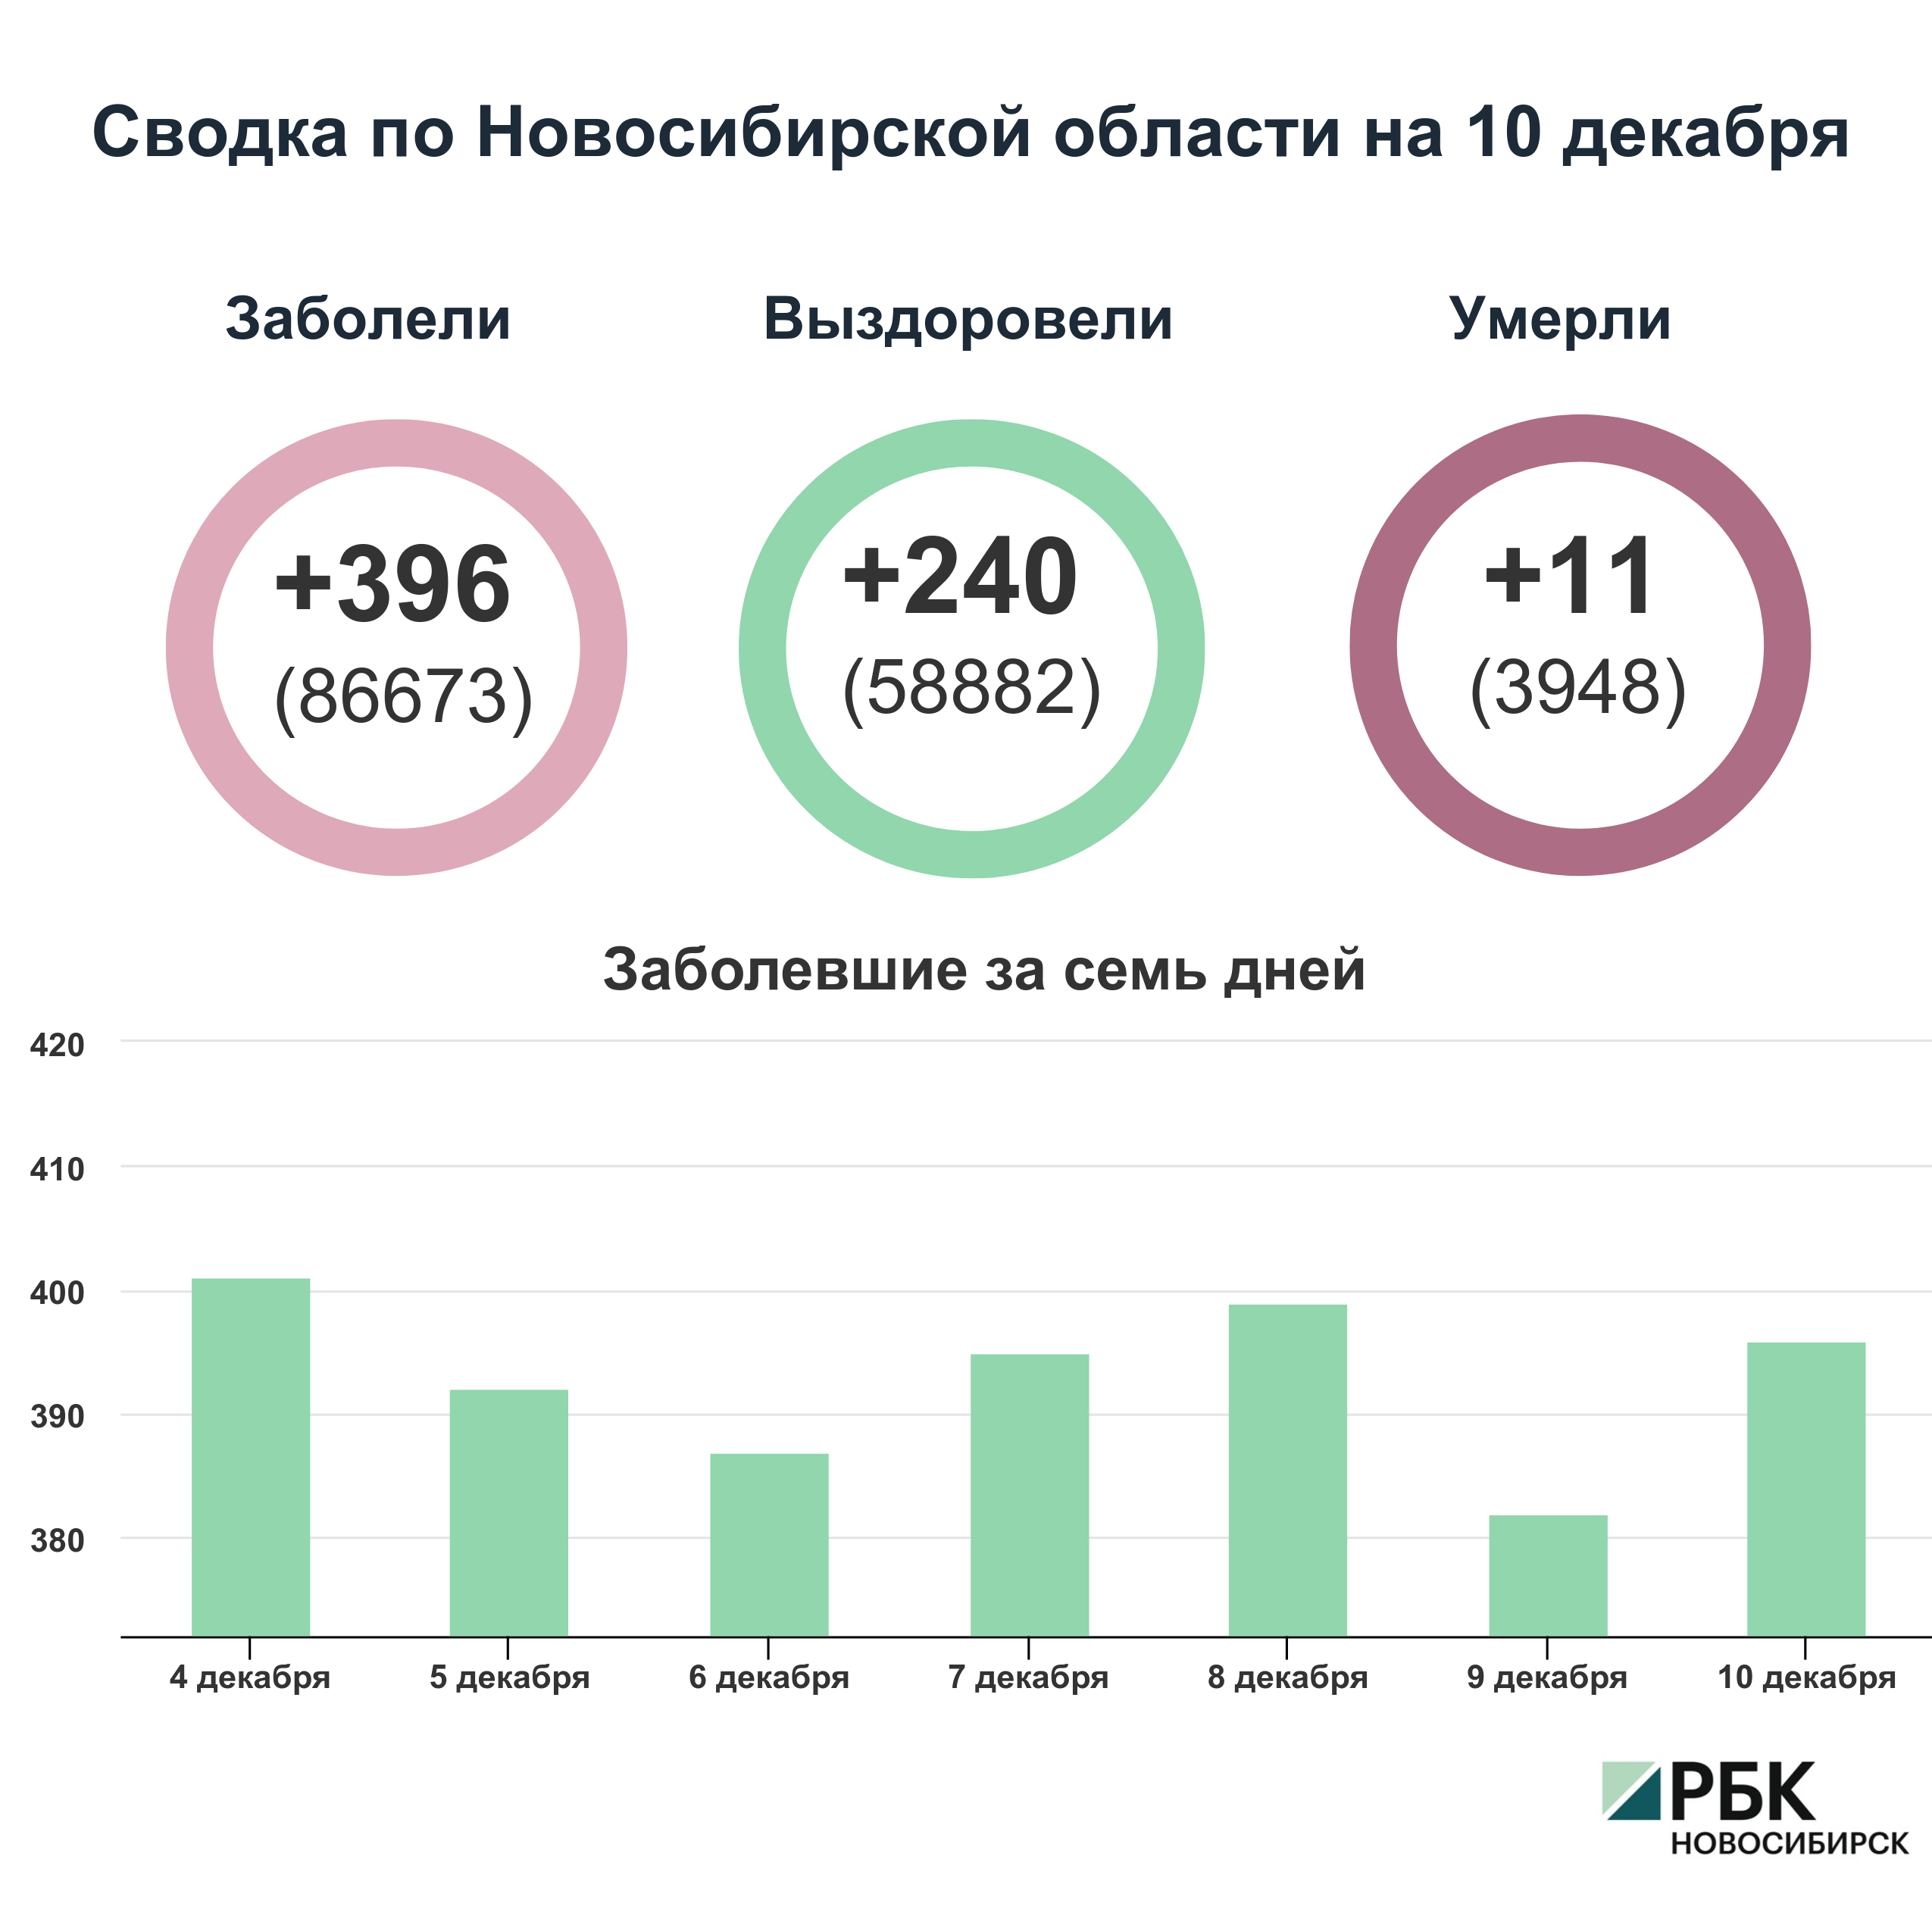 Коронавирус в Новосибирске: сводка на 10 декабря